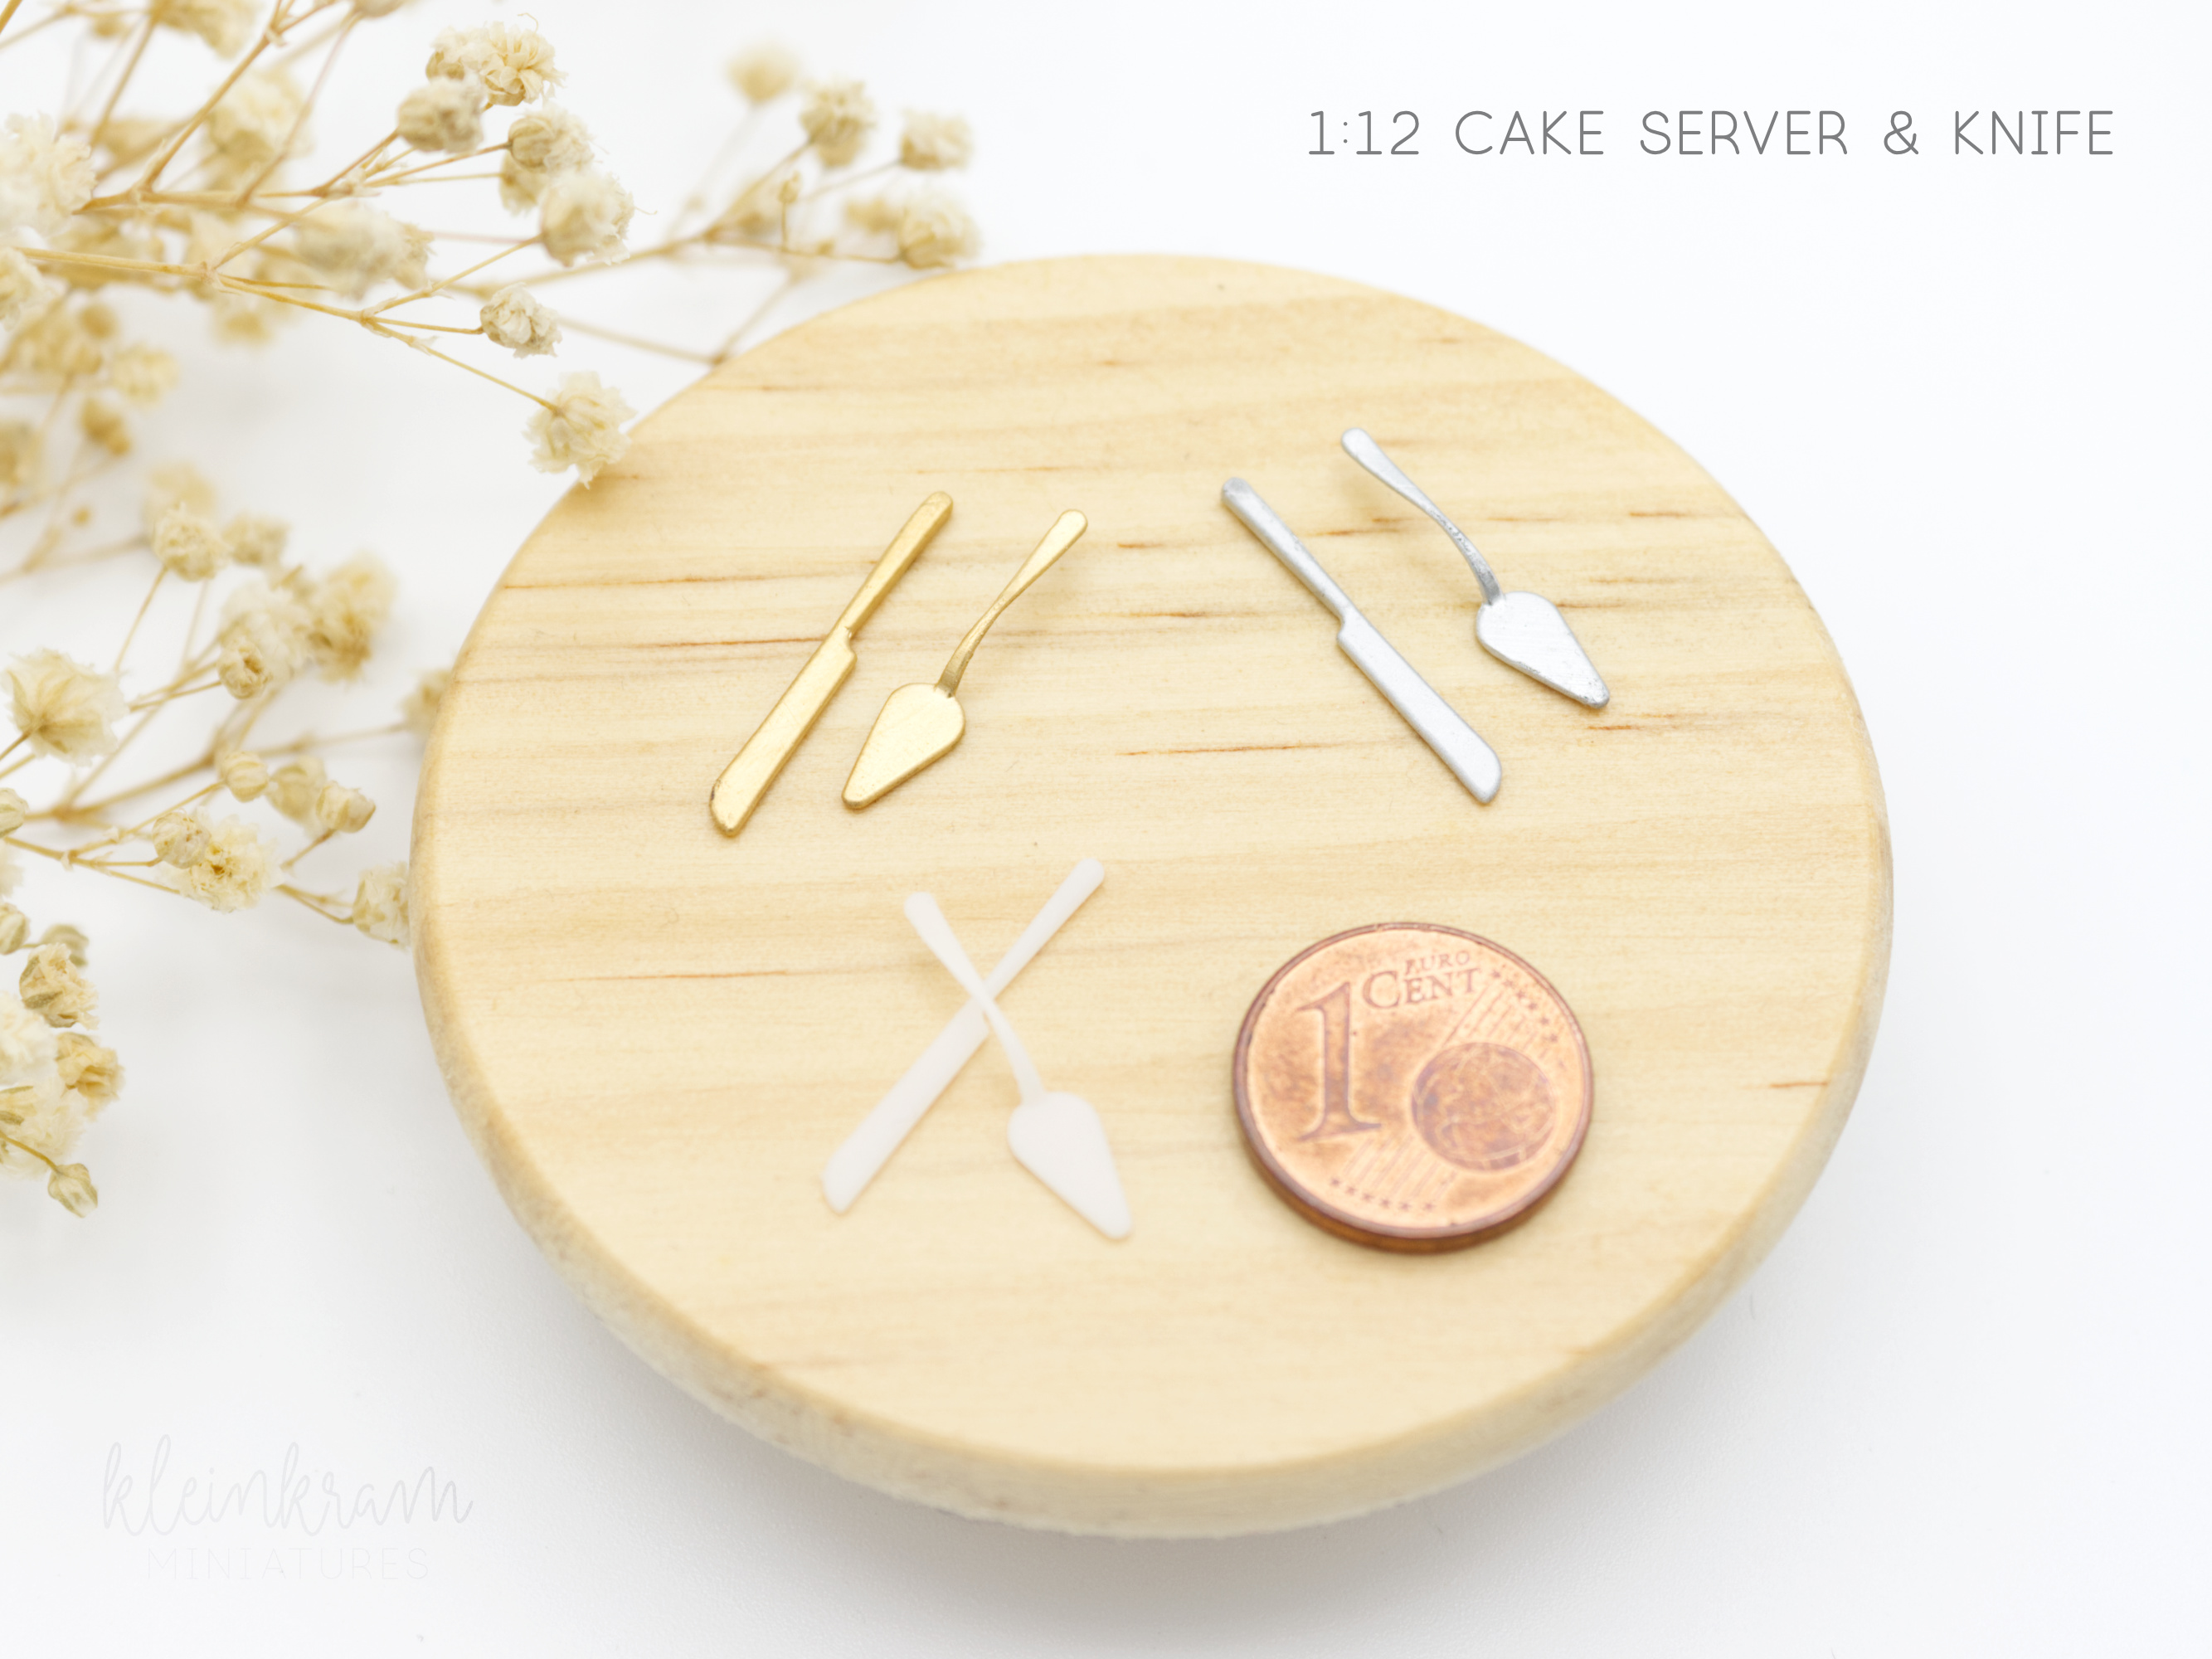 Tortenheber & -messer - 1:12 Miniatur